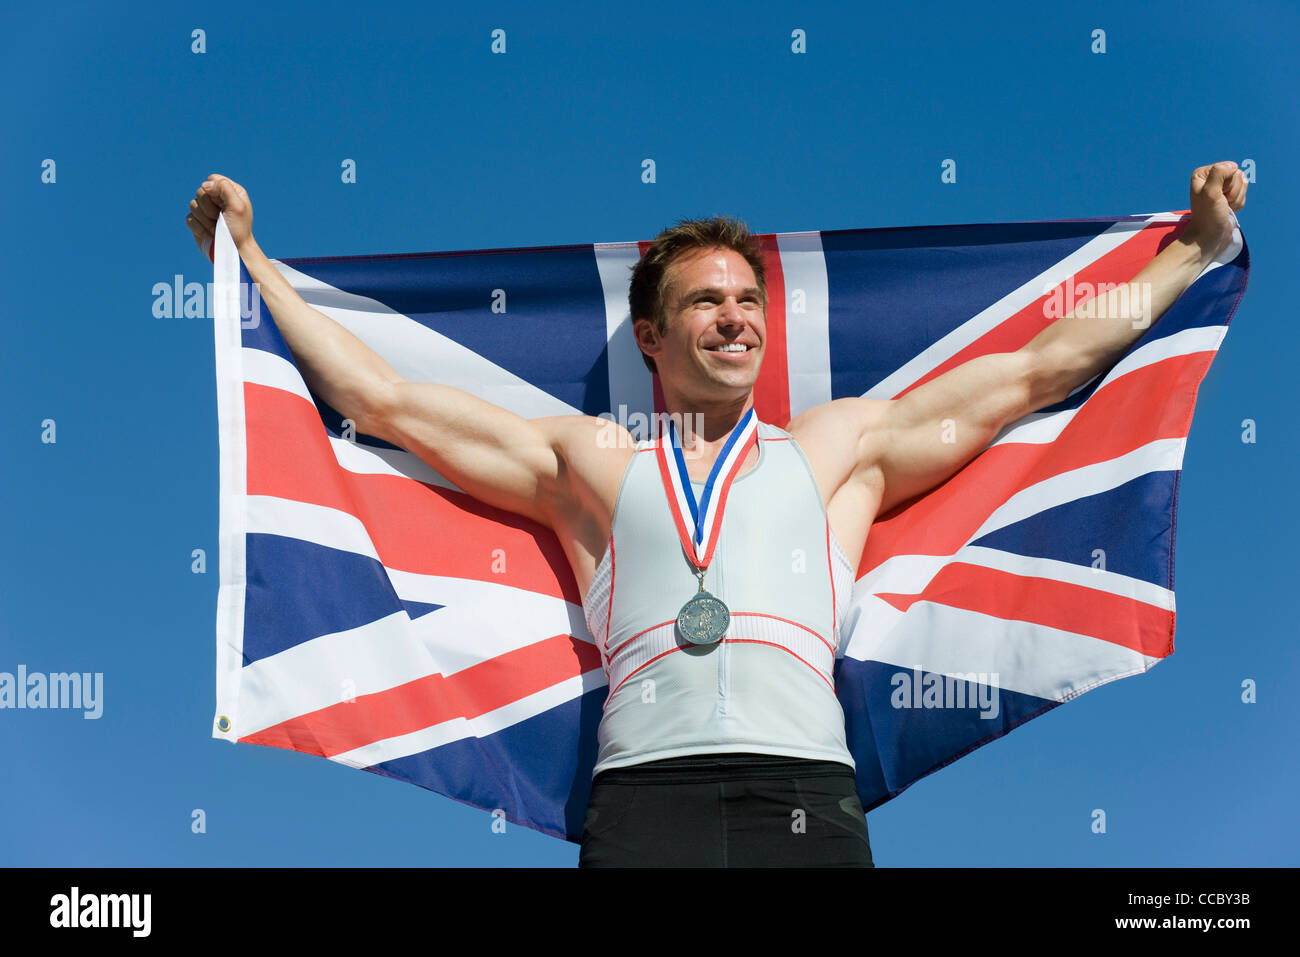 Männlicher Athlet auf Siegertreppchen, britische Fahne hochhalten Stockfoto